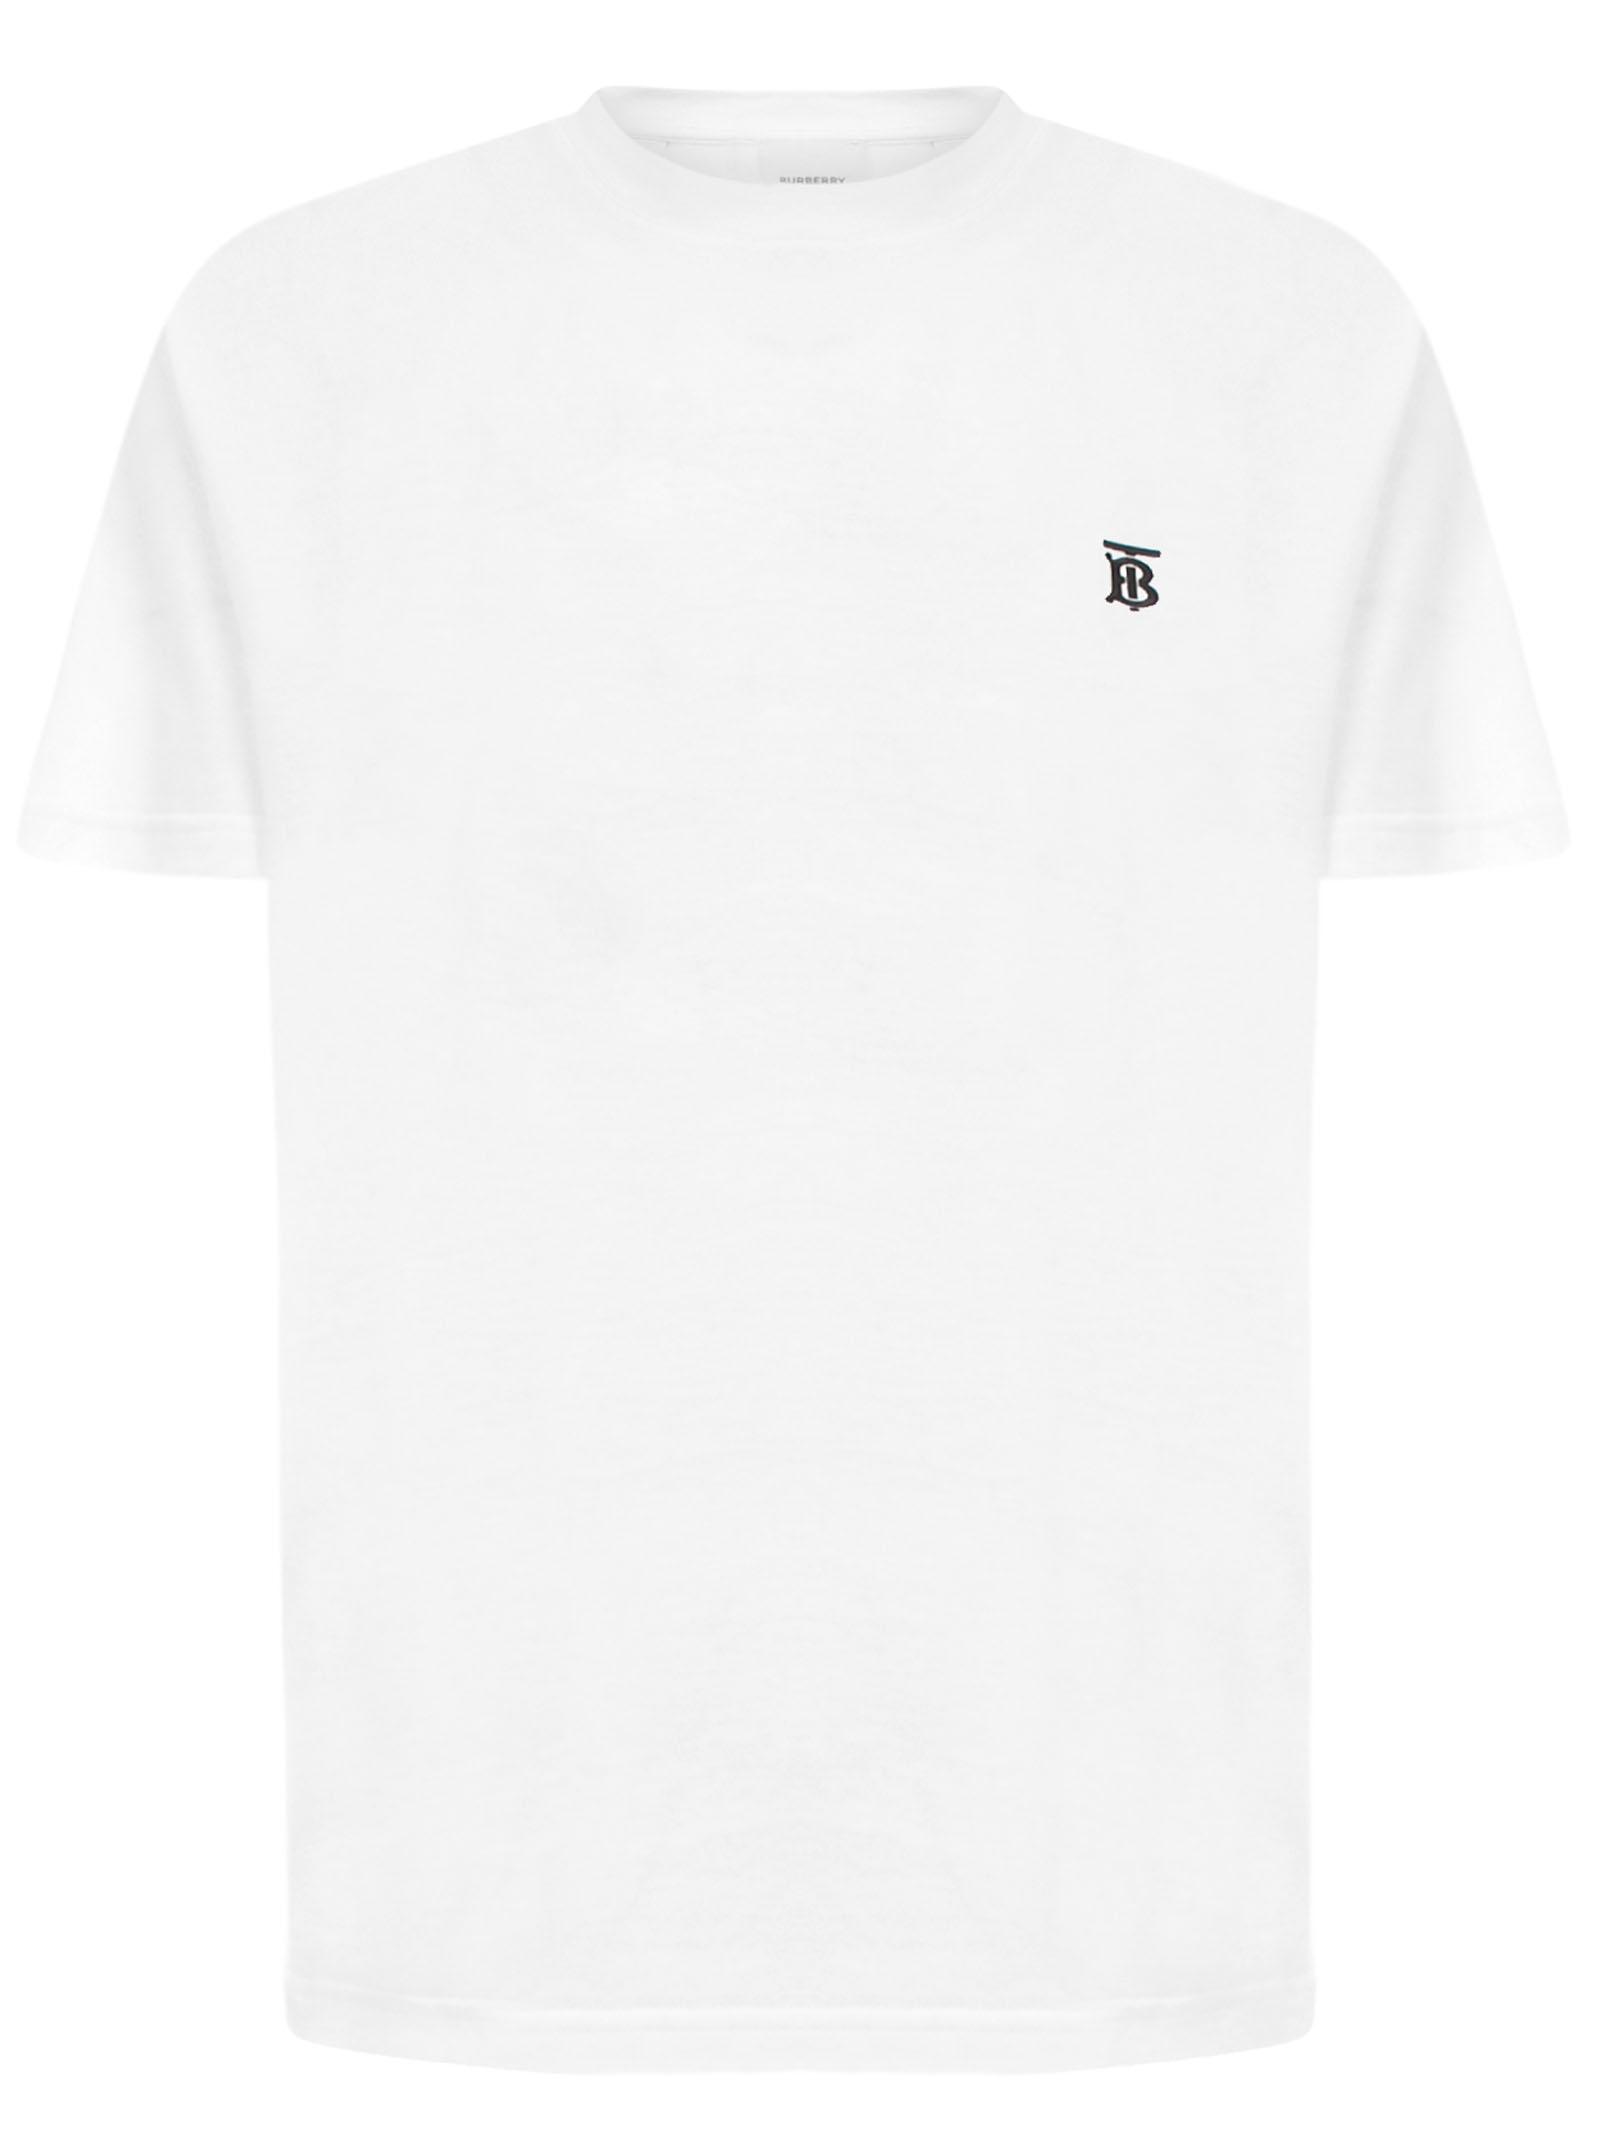 Gå en tur Tilfældig med sig Burberry Cotton Parker T Shirt in White for Men - Save 51% - Lyst